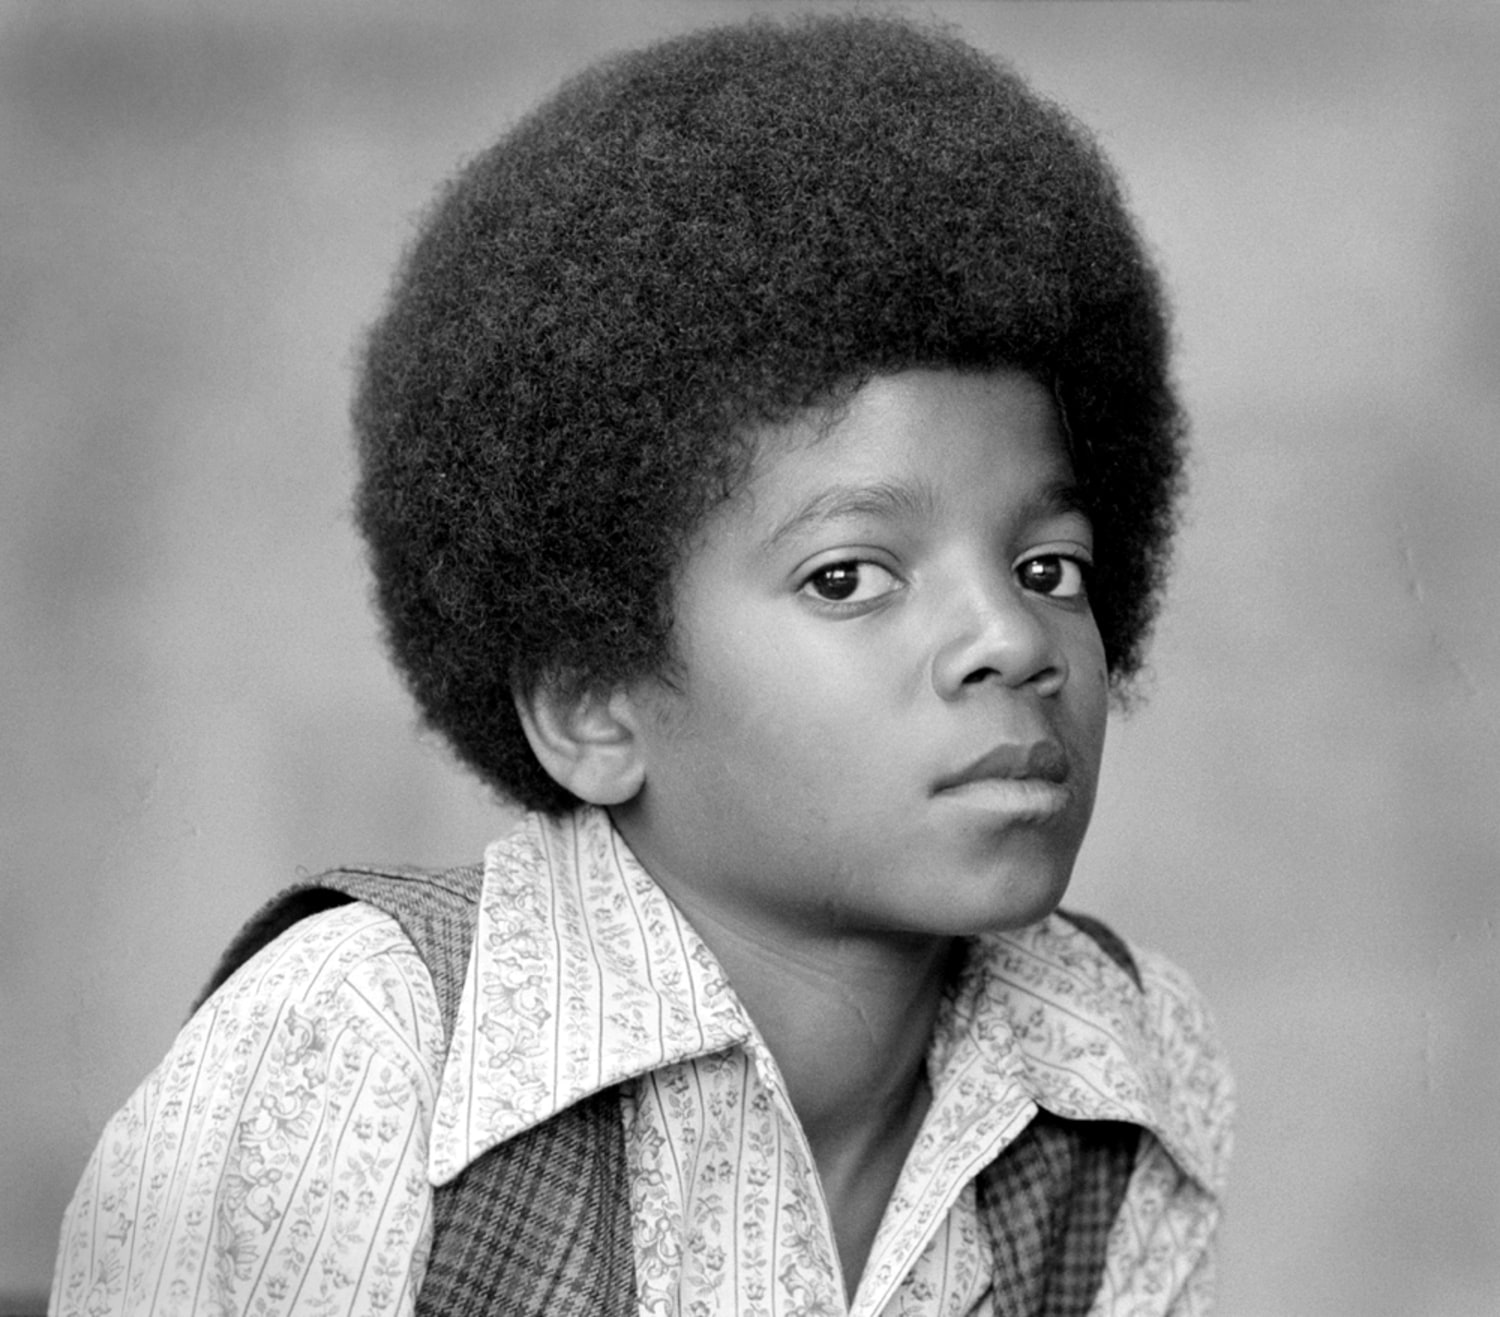 Michael Jackson's life and career